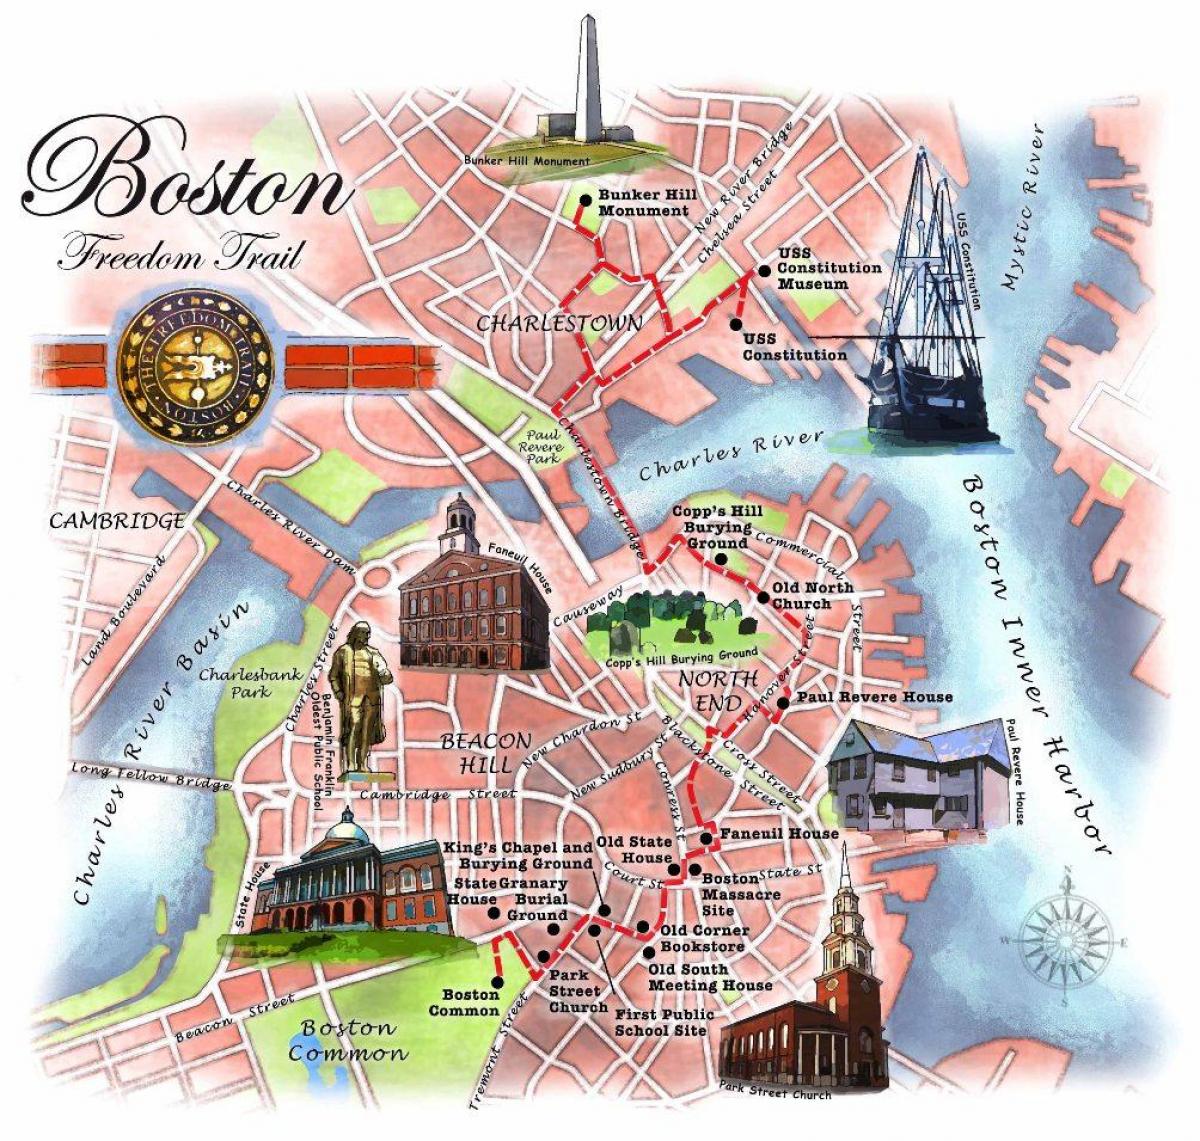 kart av Boston freedom trail